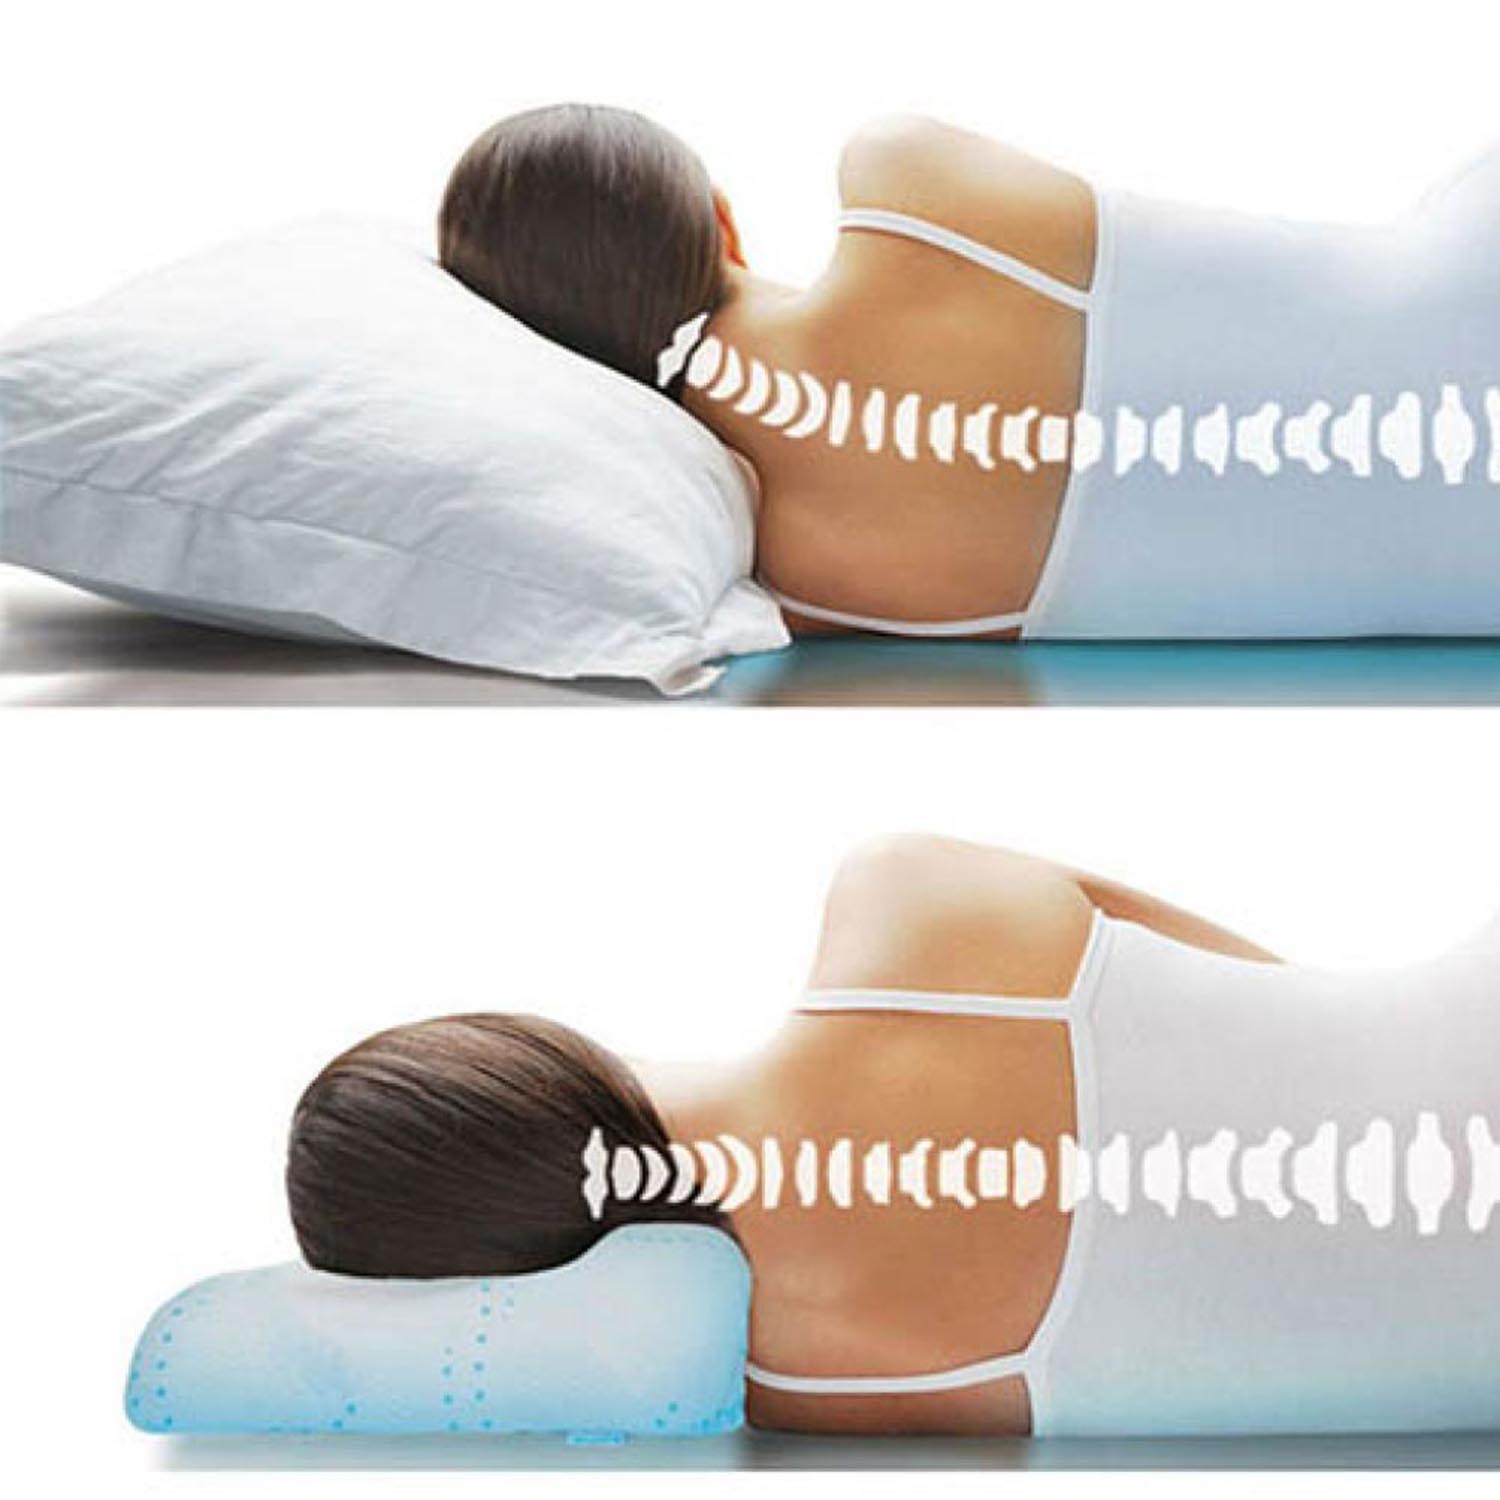 Как сделать подушку для позвоночника